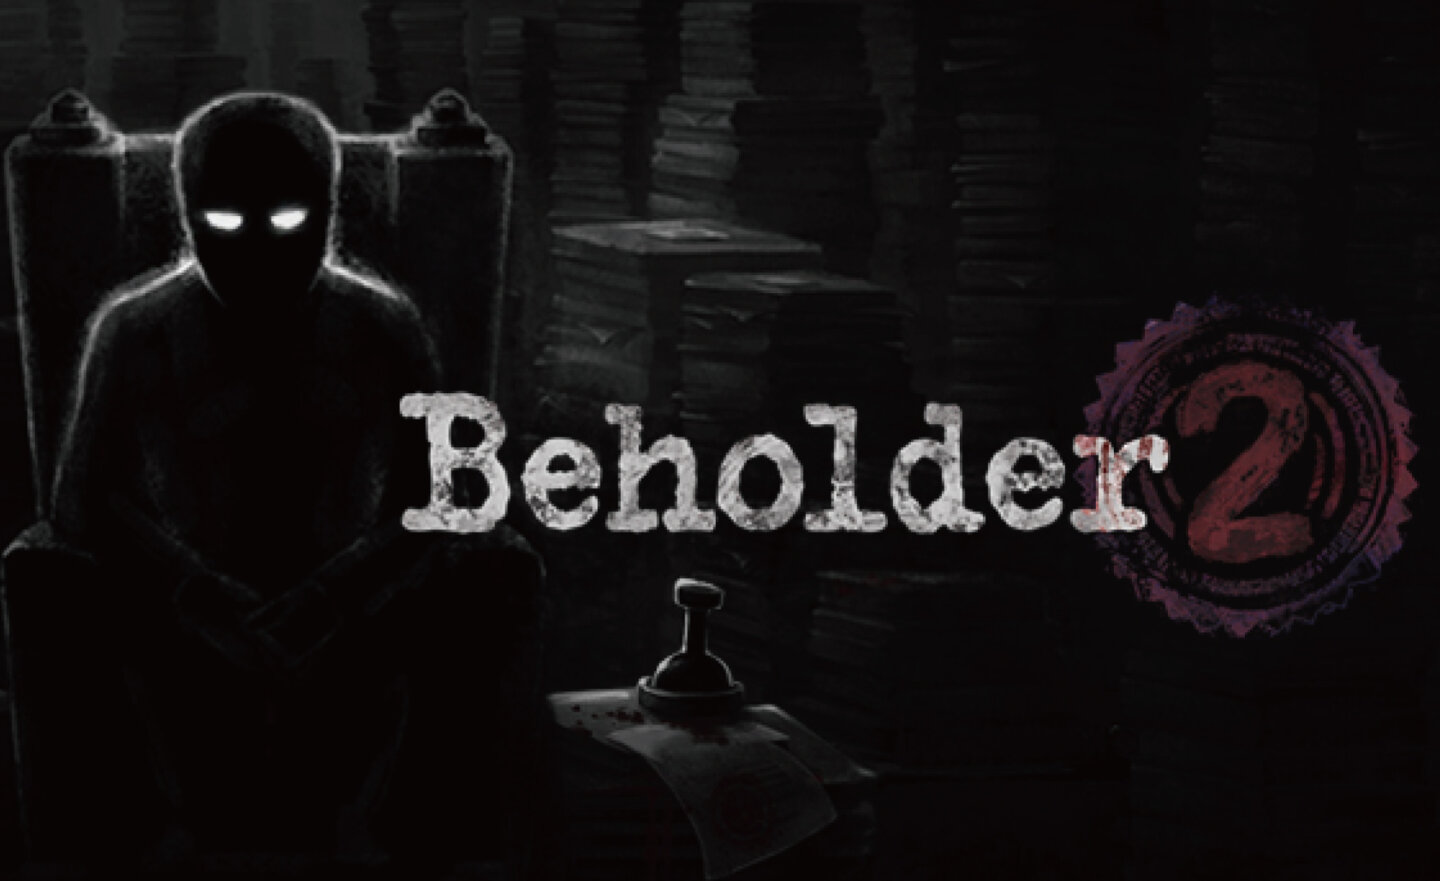 【限時免費】反烏托邦遊戲《Beholder 2 監視者2》放送中，領取時間至 7 月 3 日晚上 9:00 截止